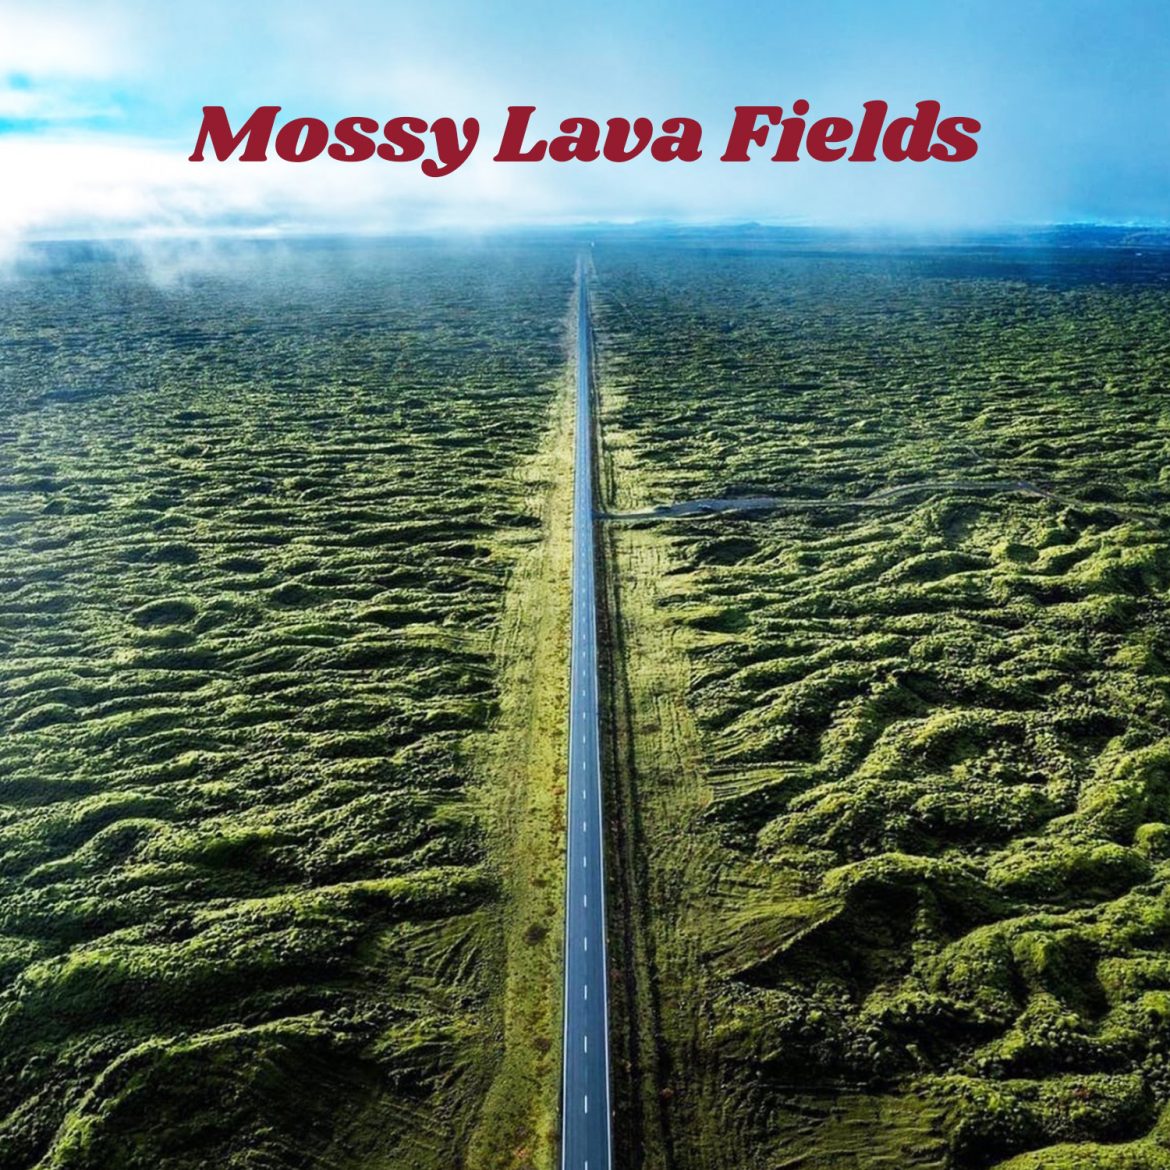 Mossy lava fields